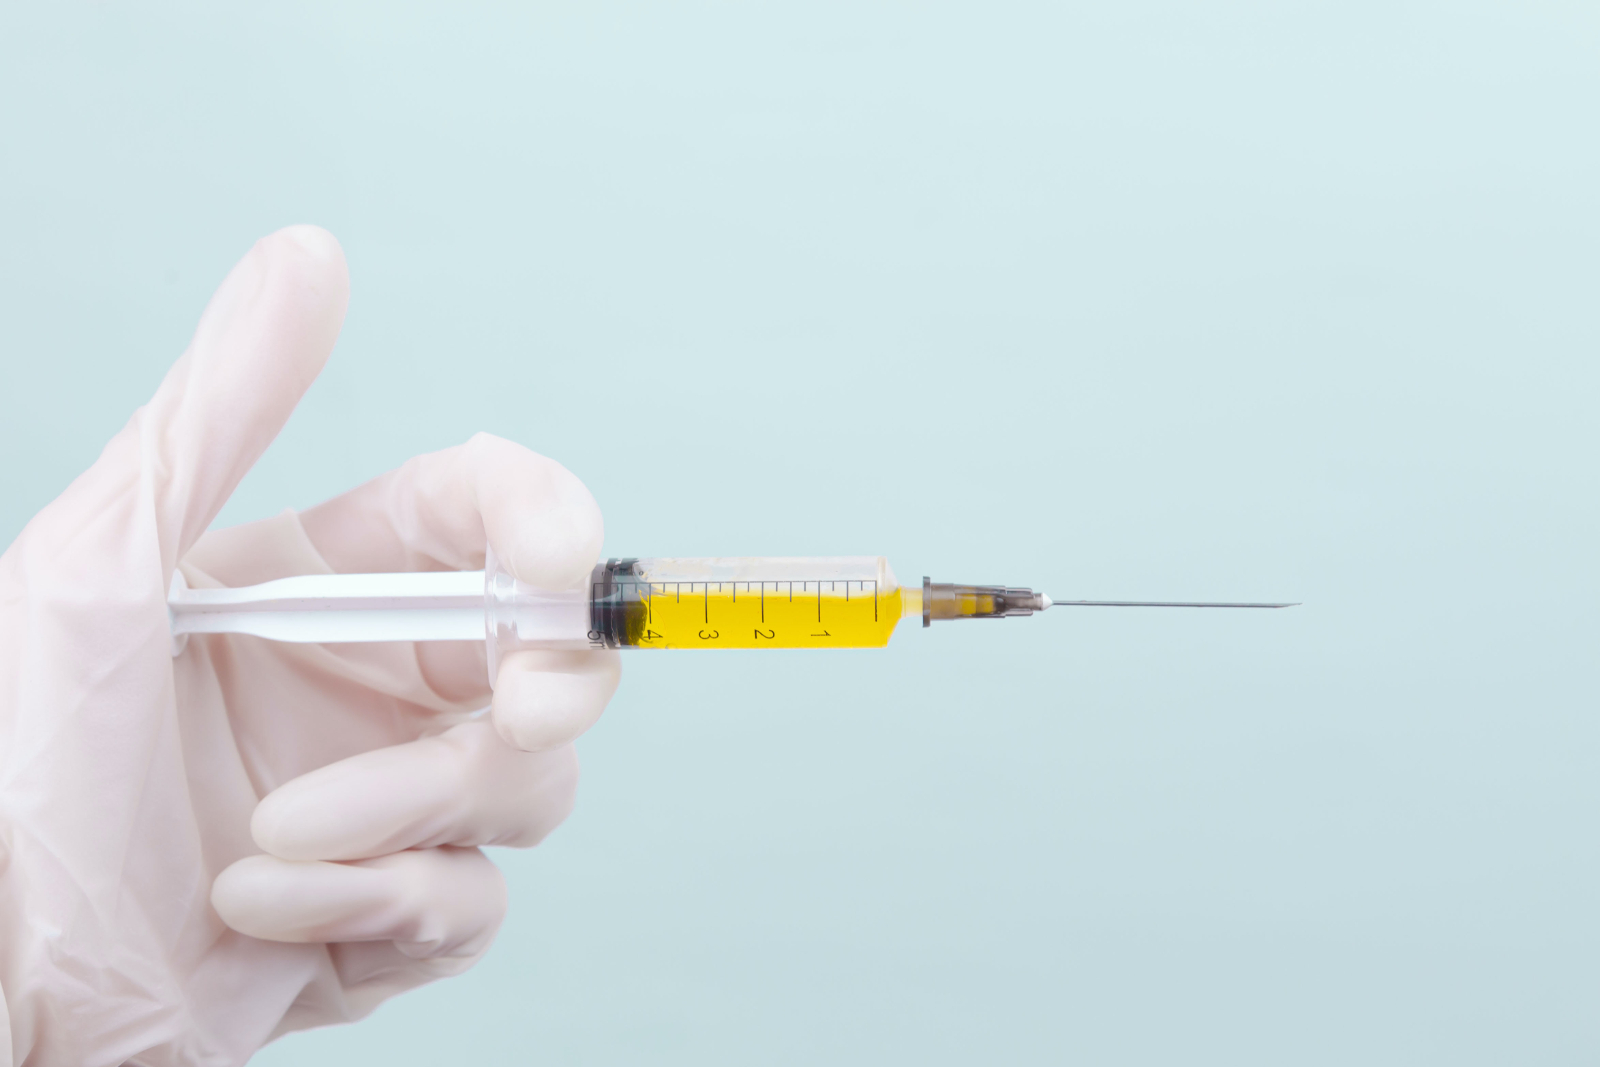 遠大賽威信重組帶狀皰疹疫苗在澳大利亞獲批臨床